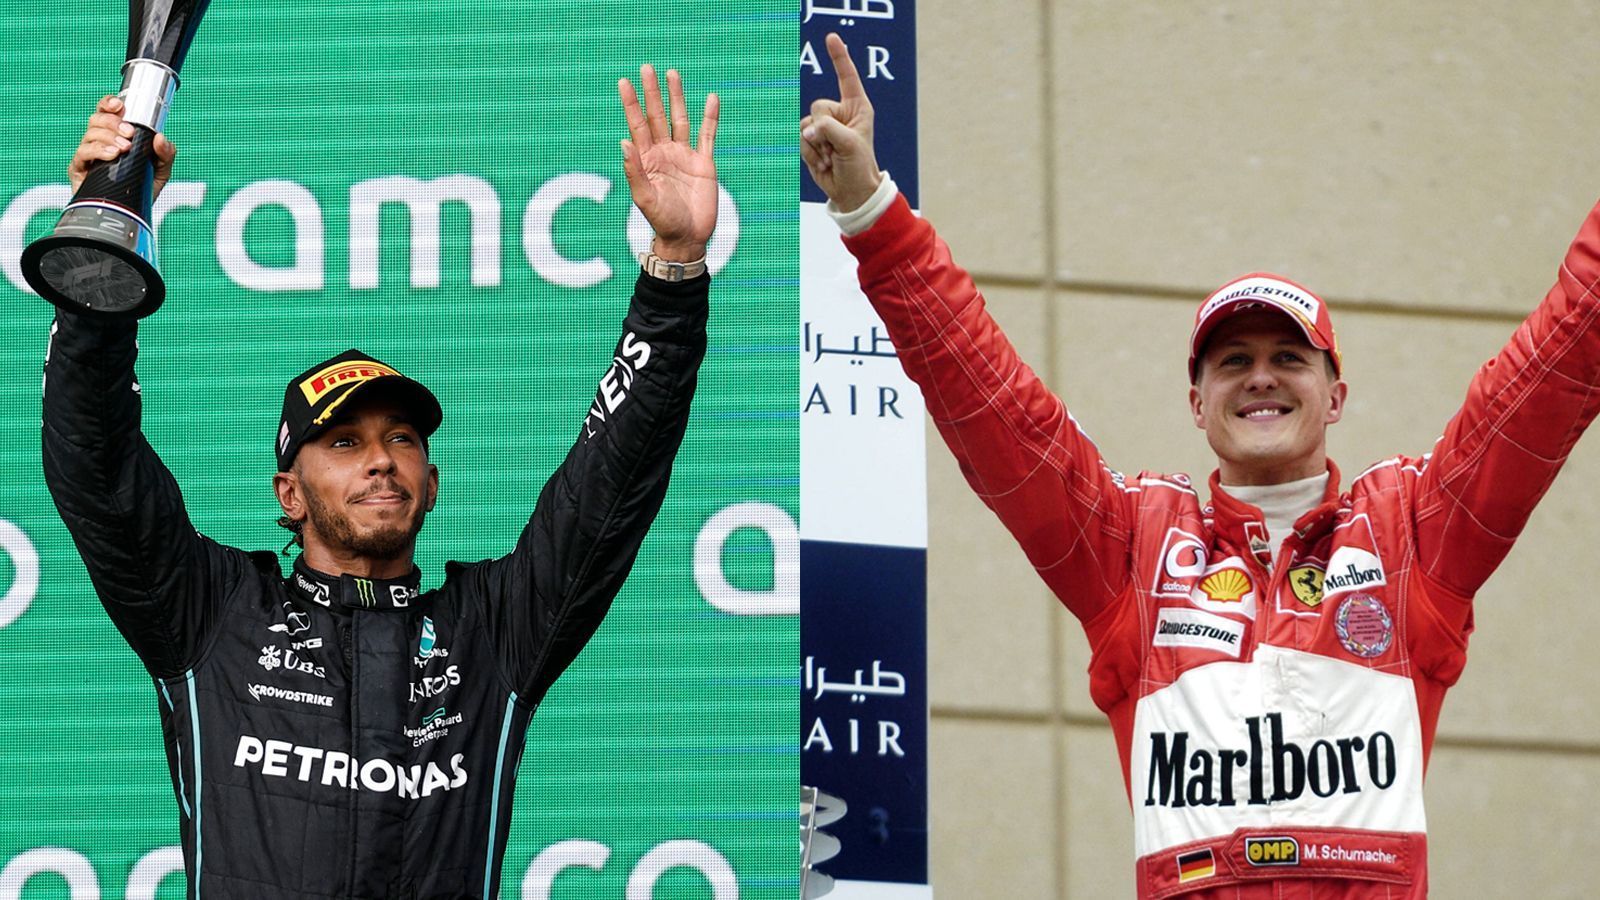 
                <strong>Klaut Hamilton den nächsten Schumi-Rekord?</strong><br>
                Auch Lewis Hamilton könnte Michael Schumacher noch einen Rekord streitig machen. Gewinnt er eines der letzten drei Rennen in Mexiko, Brasilien oder Abu Dhabi hätte der Brite die meisten Saisons in Folge mit mindestens einem Sieg zu verbuchen. Aktuell haben die beiden G.O.A.T.'s des Motorsports in jeweils 15 aufeinanderfolgenden Saisons mindestens einen Rennsieg errungen. Aufgrund der diesjährigen Performance des Mercedes ist es zwar eher unwahrscheinlich, dass Hamilton zum alleiningen Rekordhalter avanciert, jedoch konnte der siebenmalige Weltmeister in Austin bereits zeigen, dass er an einem guten Tag selbst in dieser Saison um Siege mitfahren kann.
              